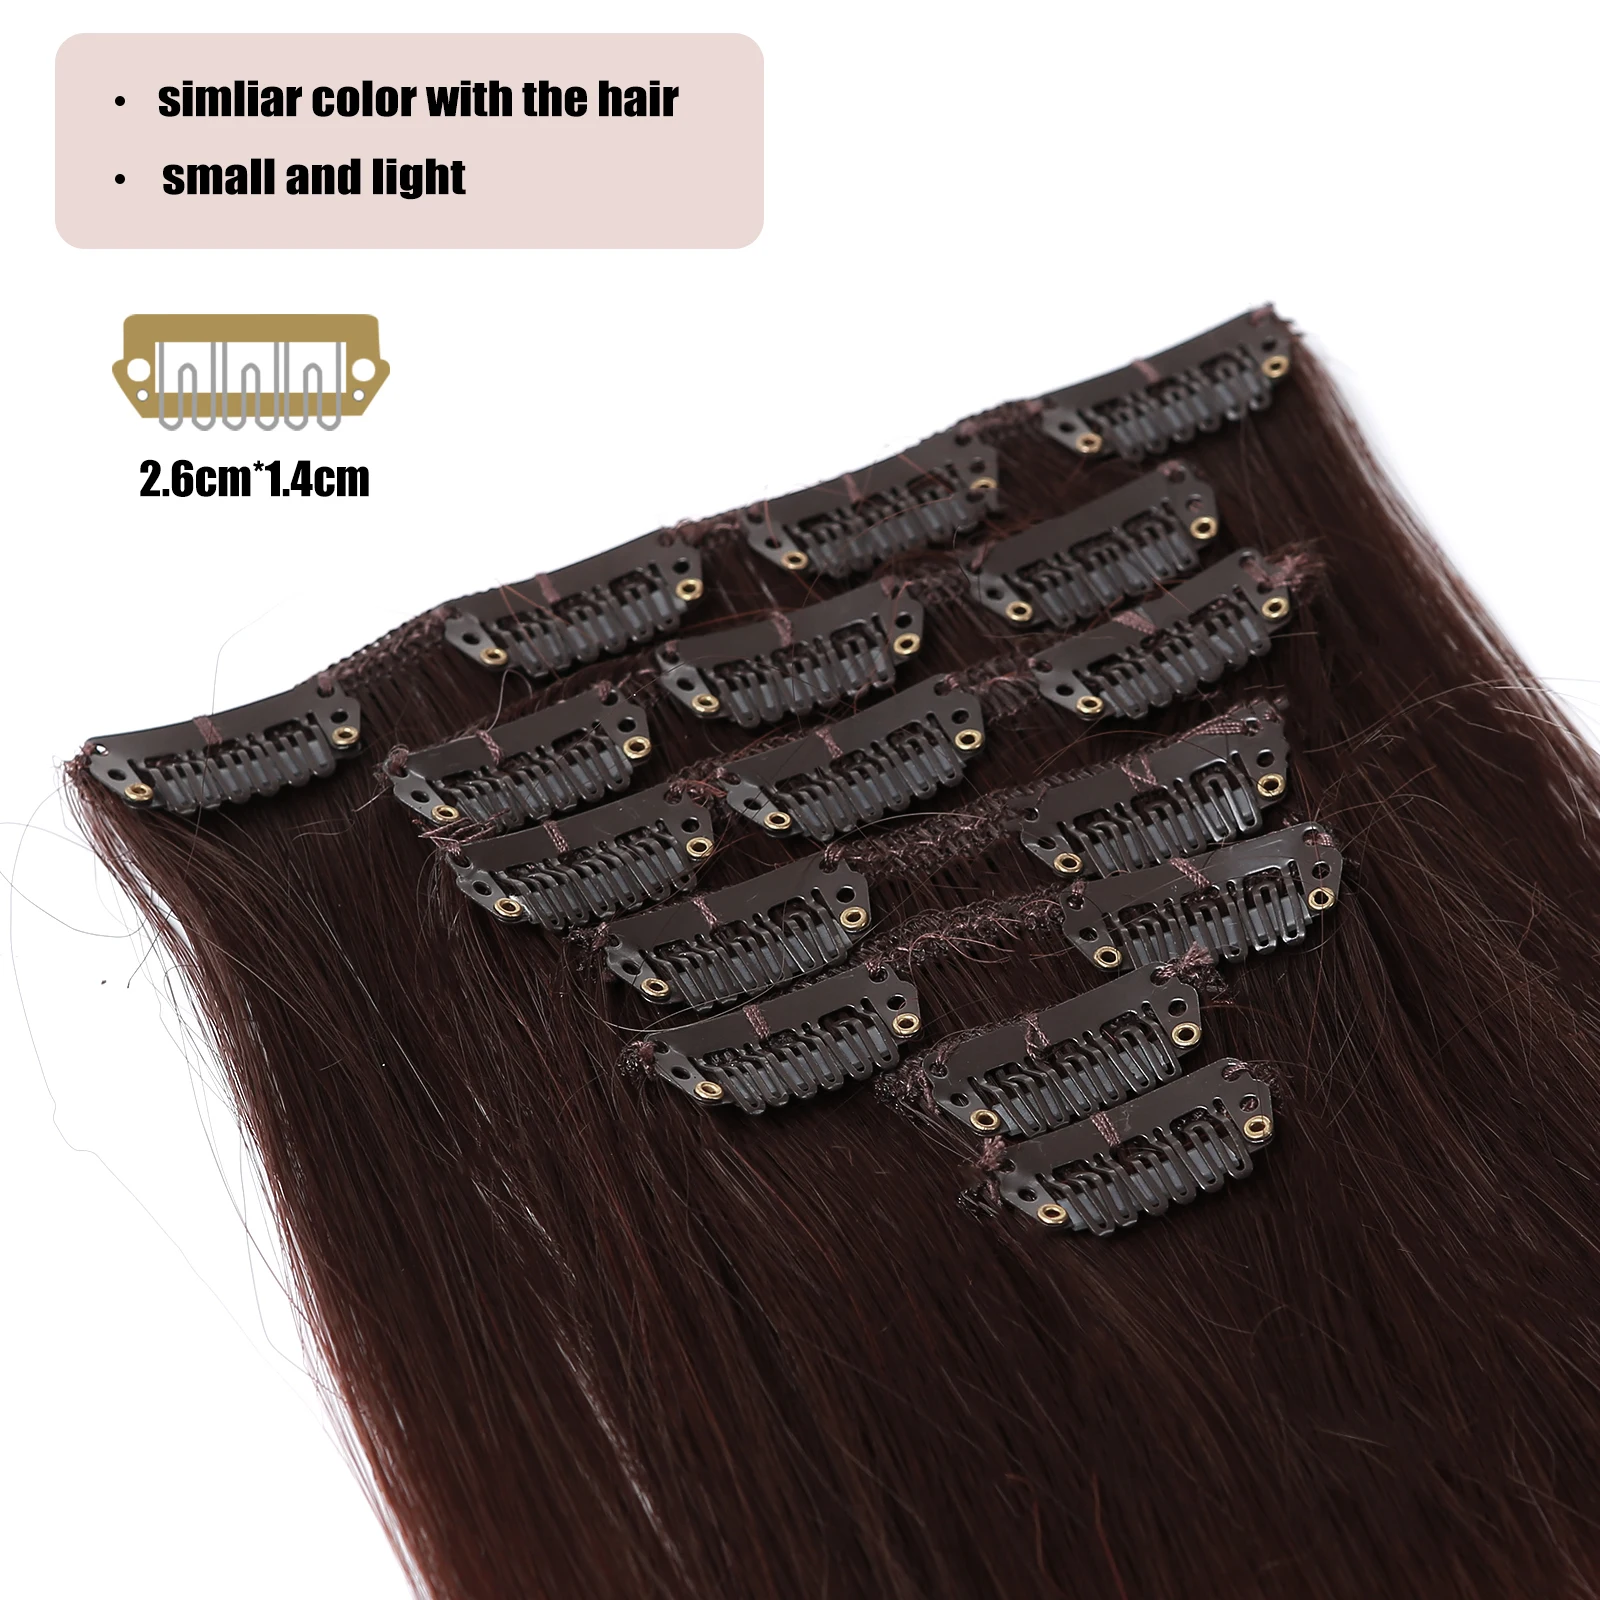 HAIRCUBE סינטטי קליפ על הארכת שיער שחור אפר Ombre זמן ישר שחובשים פיאות שימוש יומיומי נקבה הפאה עמיד בפני חום - 2